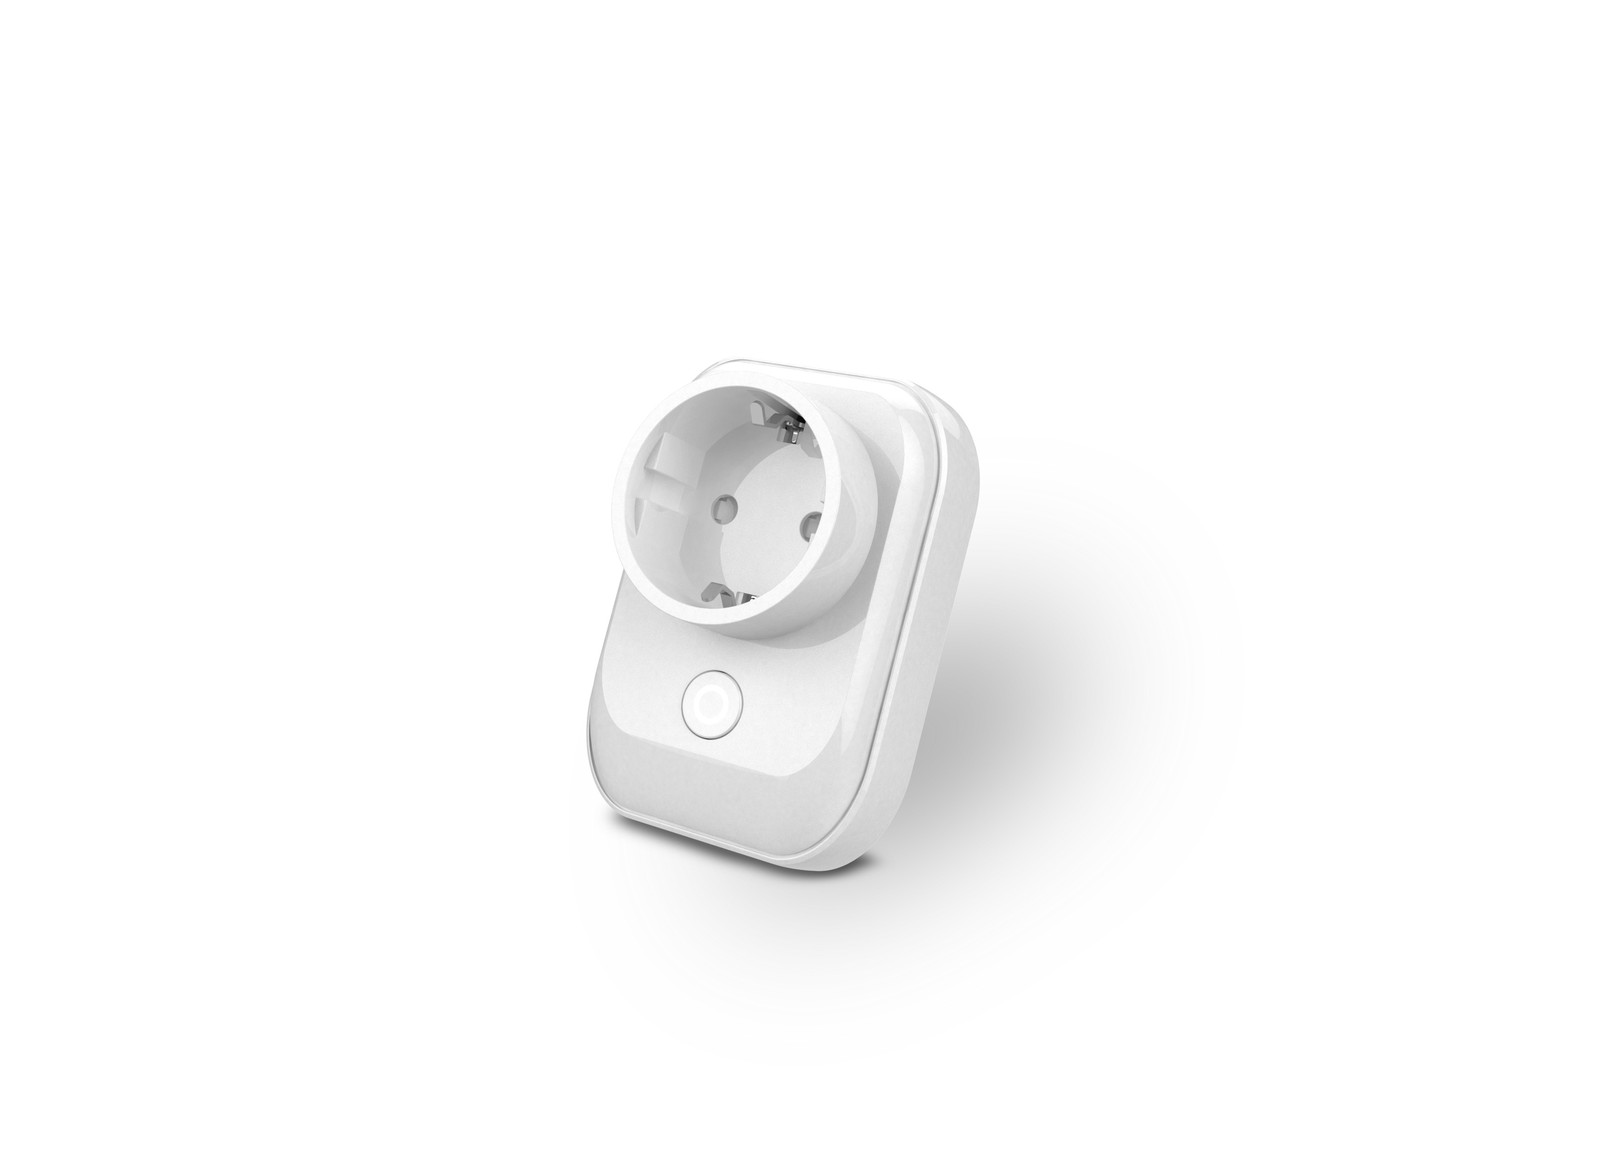 Lupus hat eine Zigbee-Funksteckdose auf den Markt gebraucht, mit der sich vorhandene Geräte im Haus smart vernetzen und per App steuern lassen.